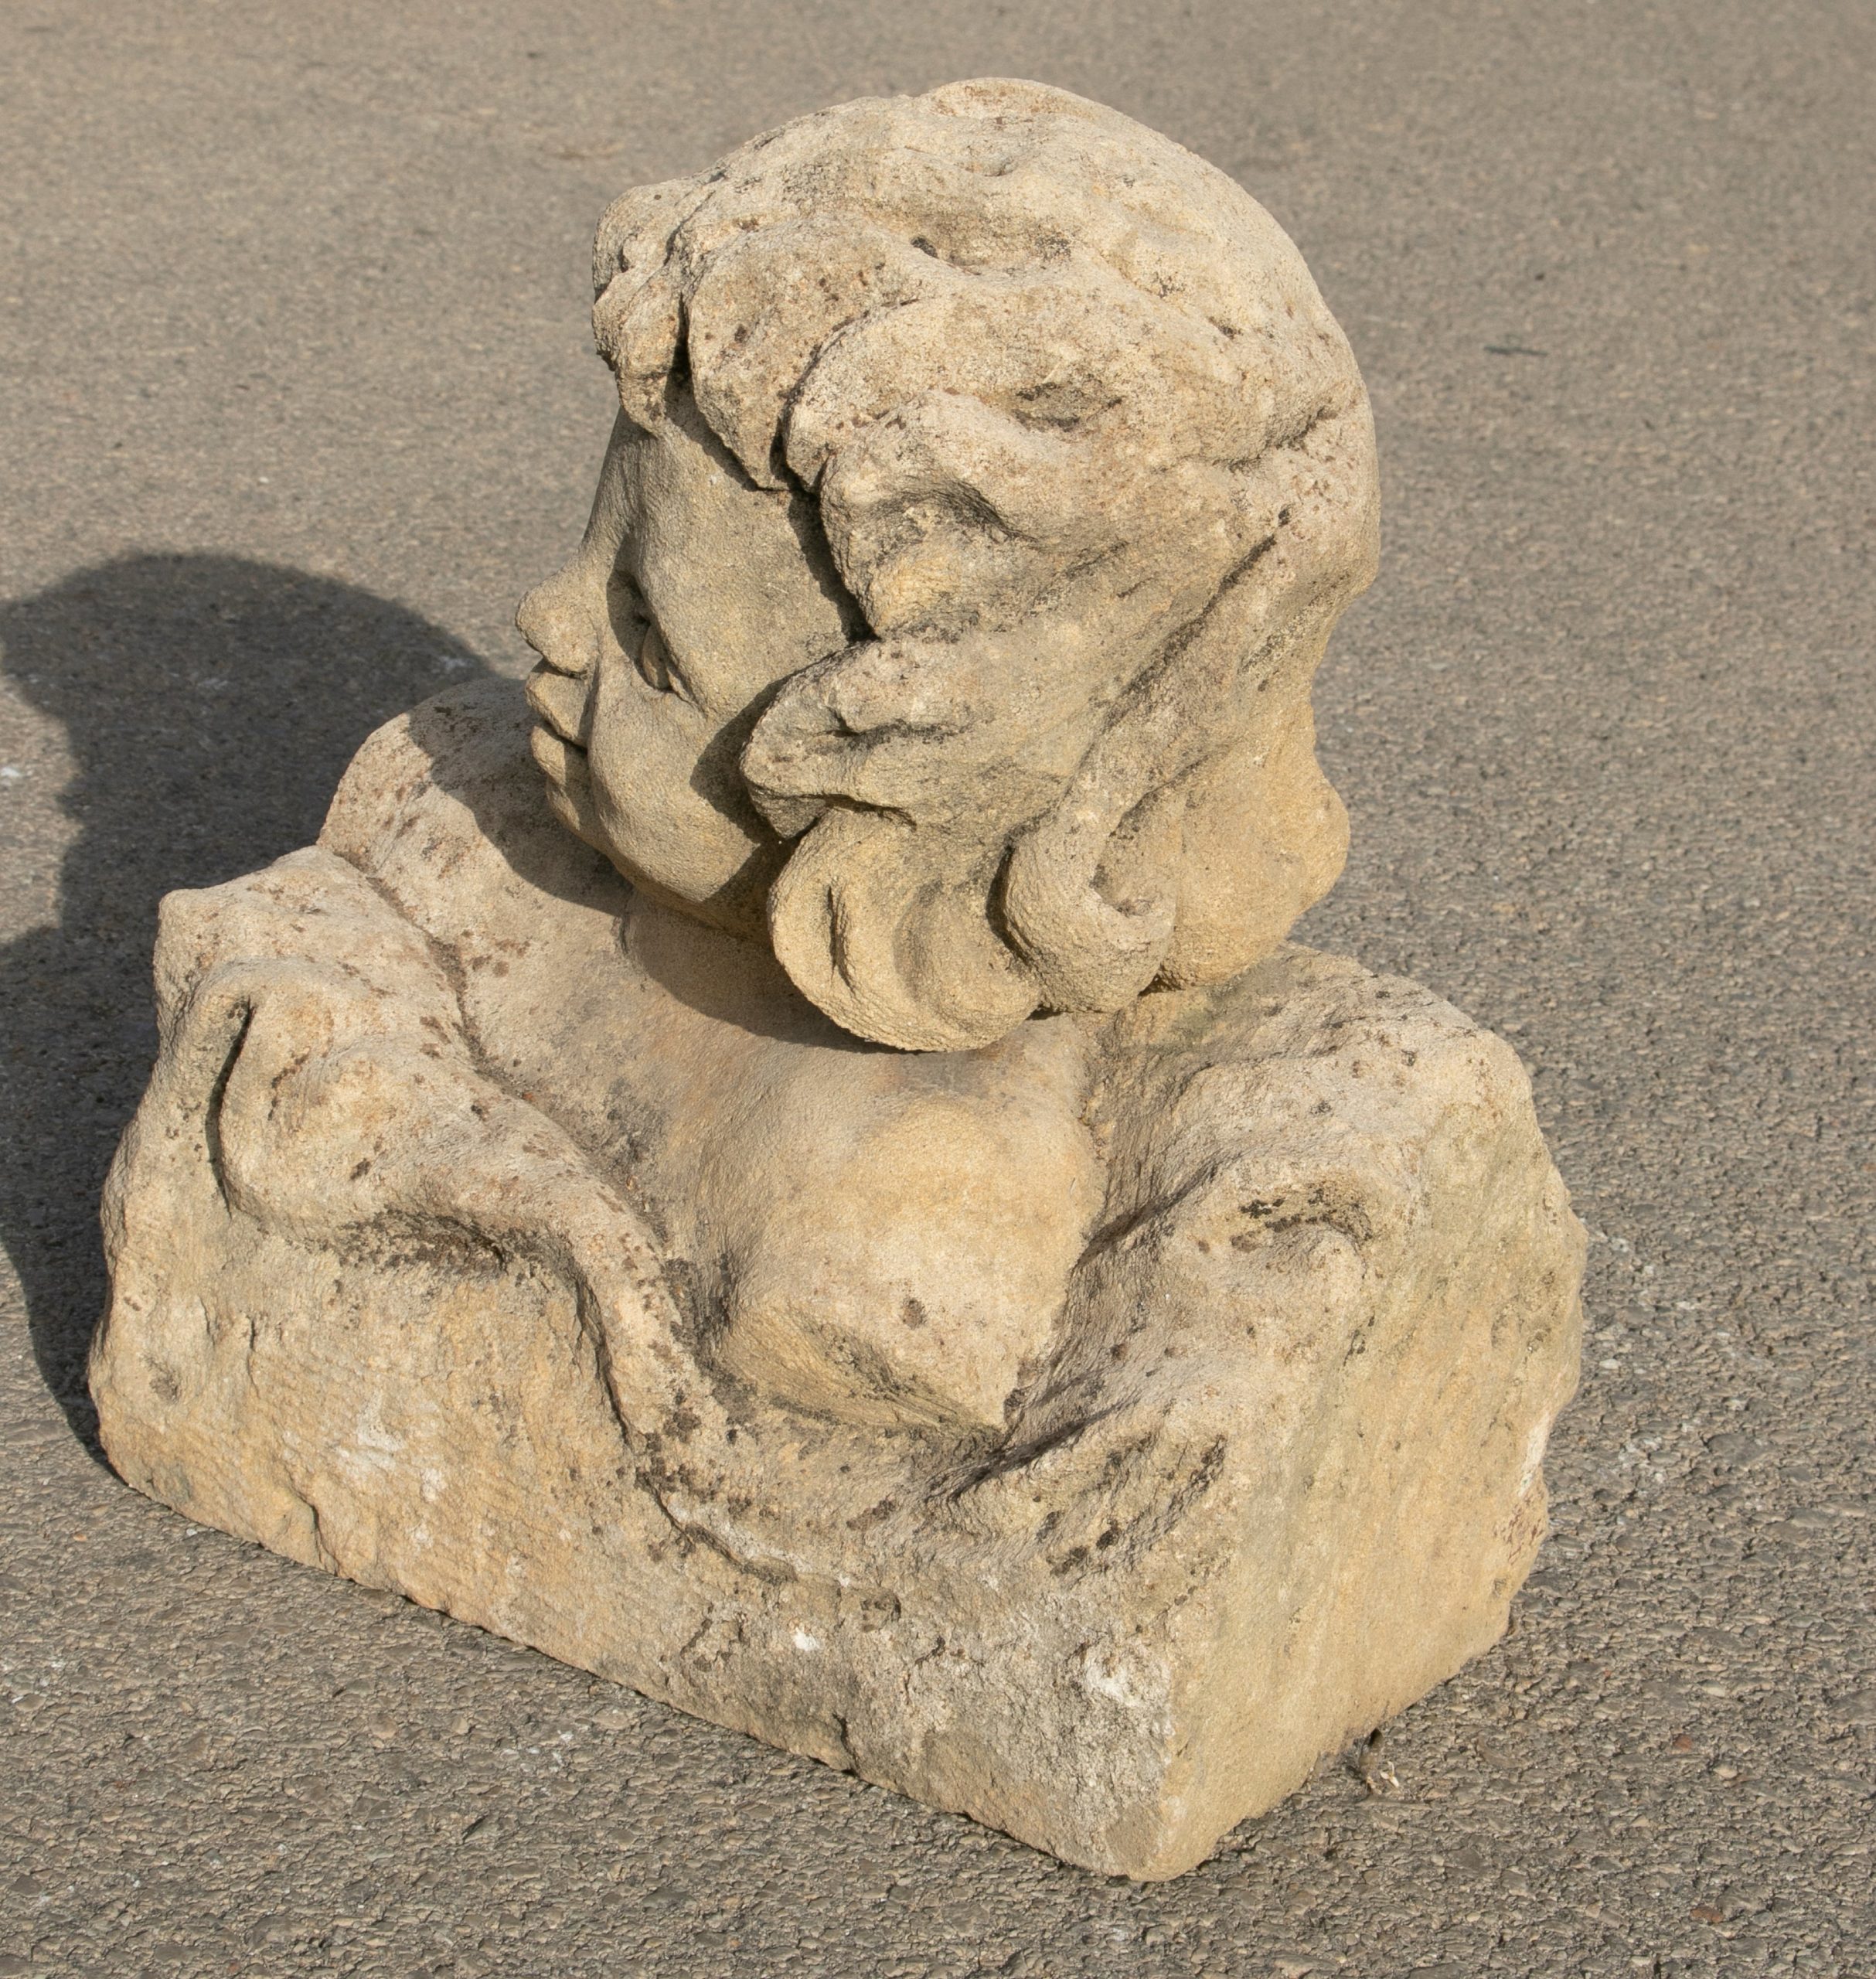 Busto de Niño en Piedra Tallado a Mano, del Siglo XVIII